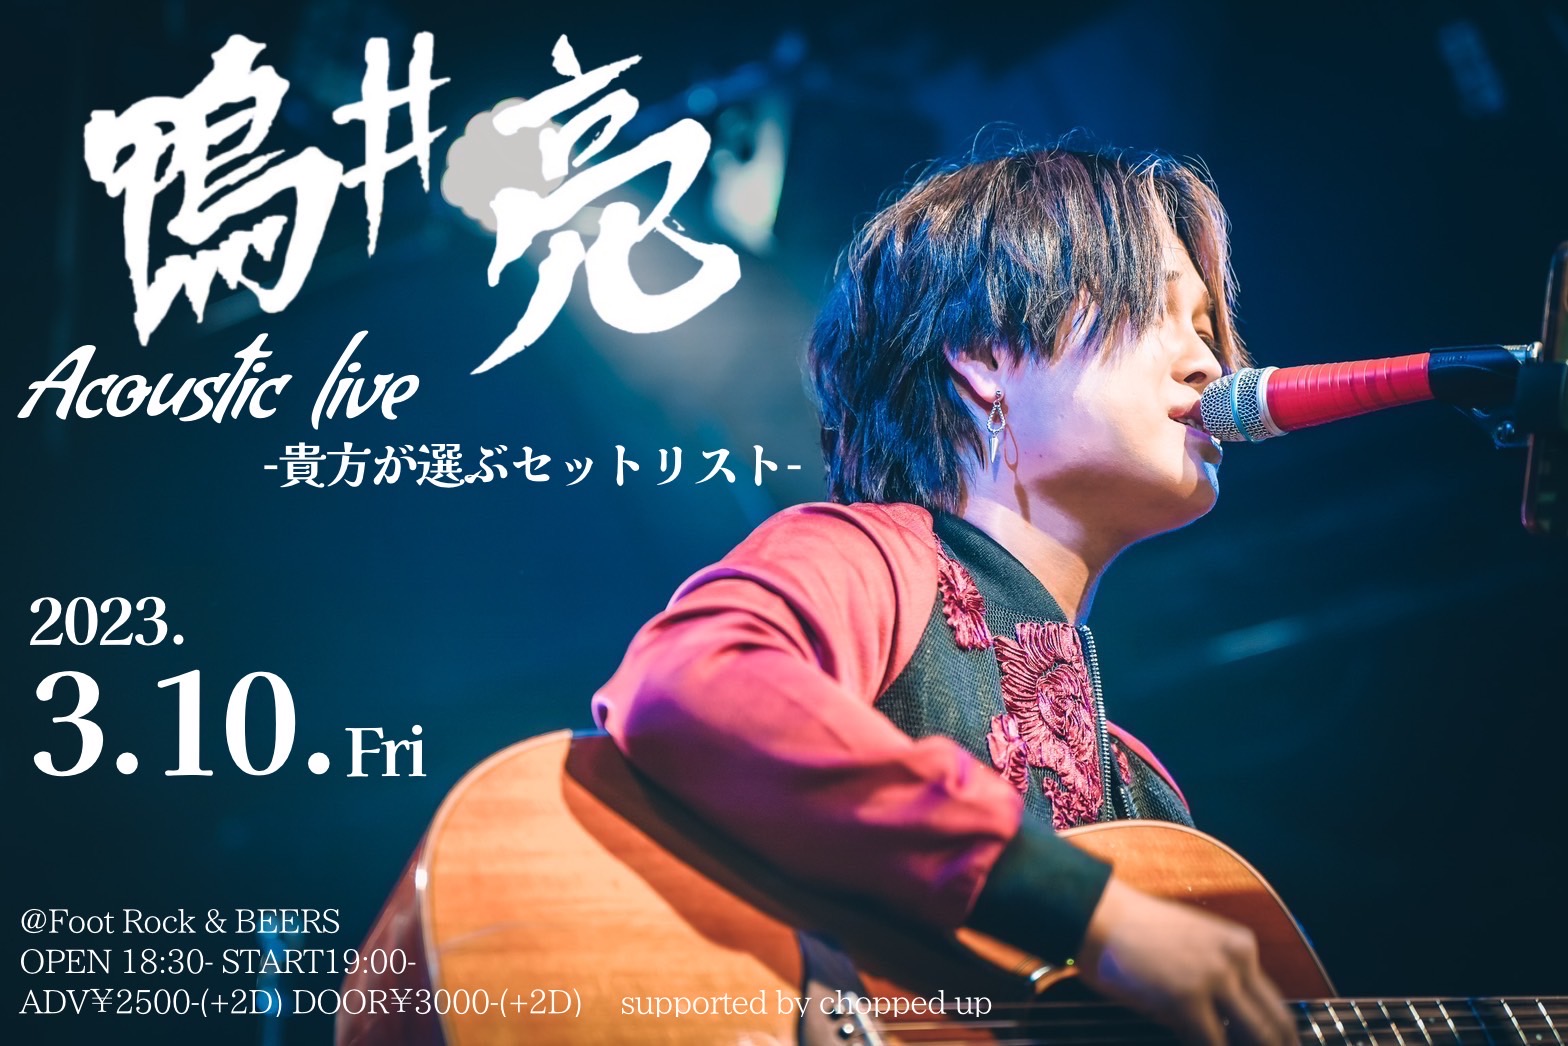 鴨井亮Acoustic  live
-貴方が選ぶセットリスト -